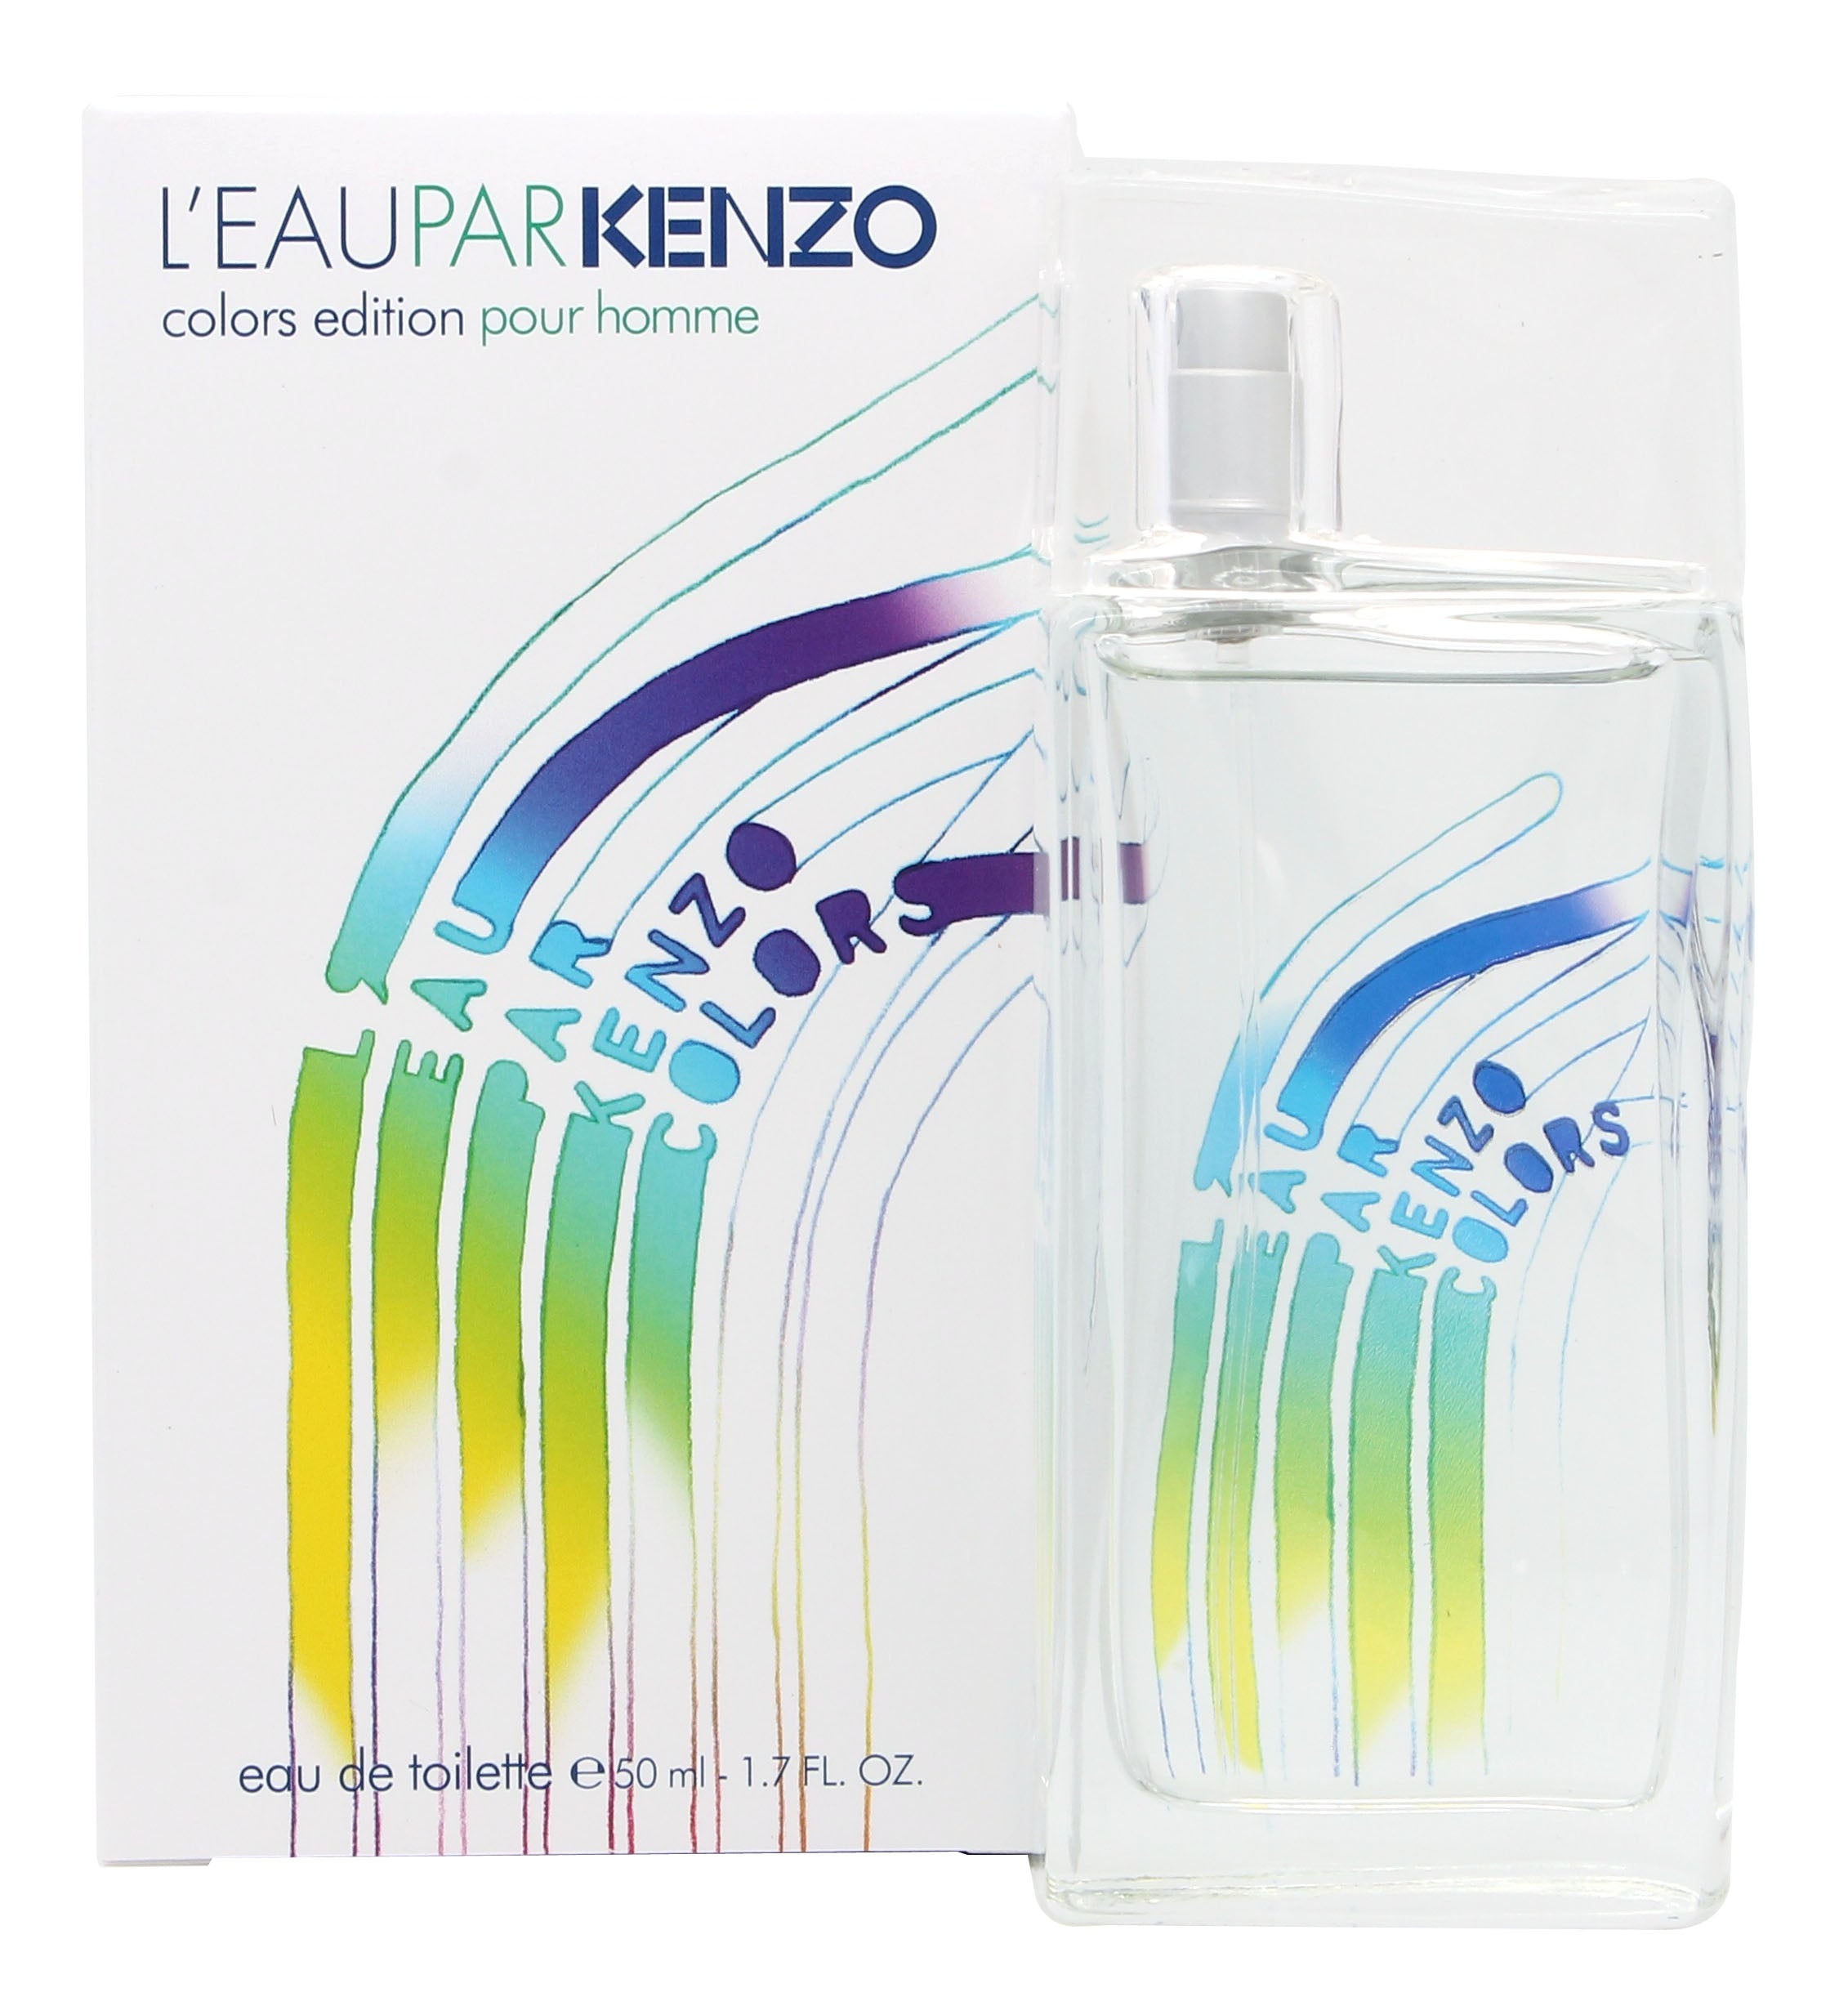 View Kenzo LEau Par Kenzo Colors Pour Homme Eau de Toilette 50ml Spray information